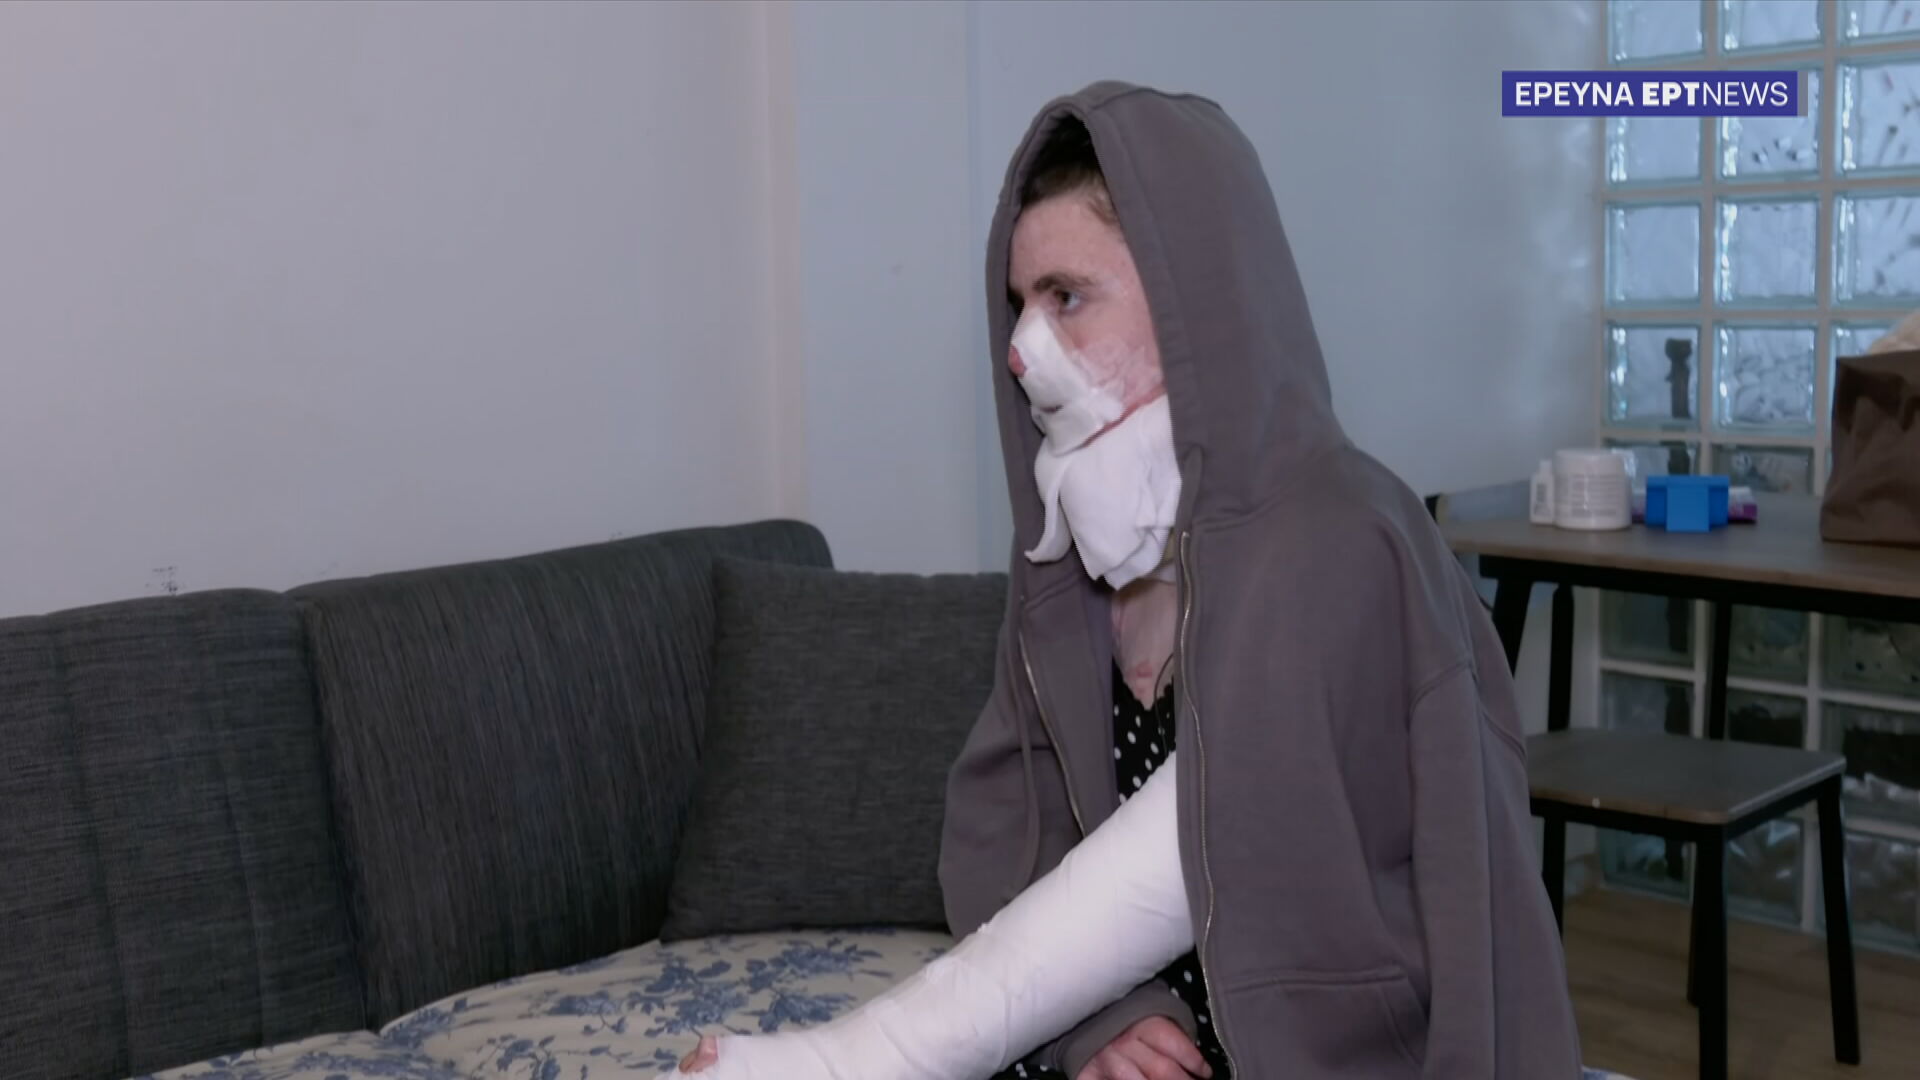 Τραύματα σε σώμα και ψυχή: Εγκαυματίες μιλούν στο ΕΡΤNews για τη μακρόχρονη νοσηλεία τους και τους αφόρητους πόνους